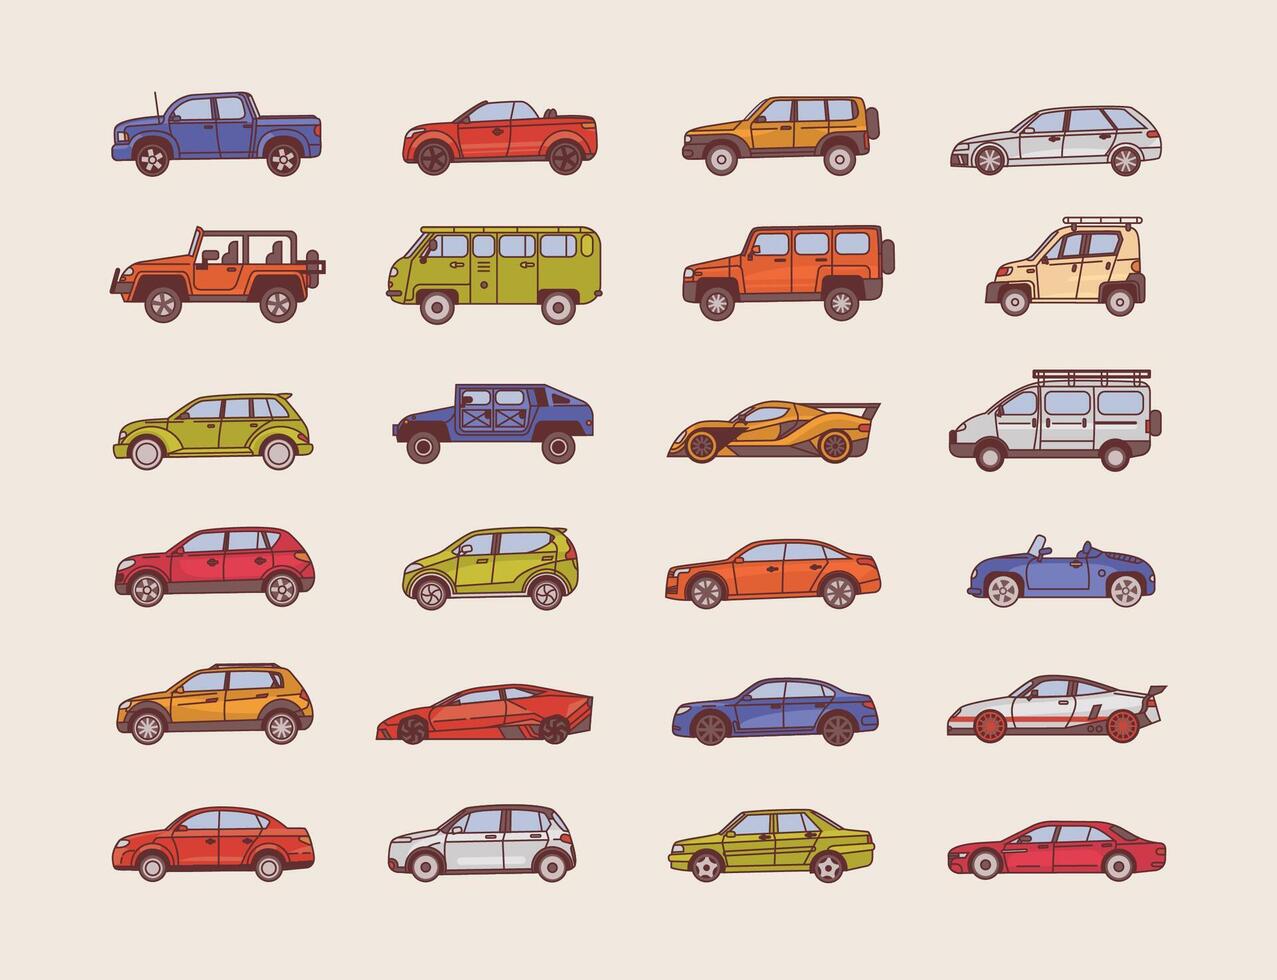 stor samling av bilar av olika kropp konfiguration stilar - cabriolet, sedan, plocka upp, halvkombi. uppsättning av modern bilar av annorlunda typer. färgrik illustration i linje konst stil. vektor